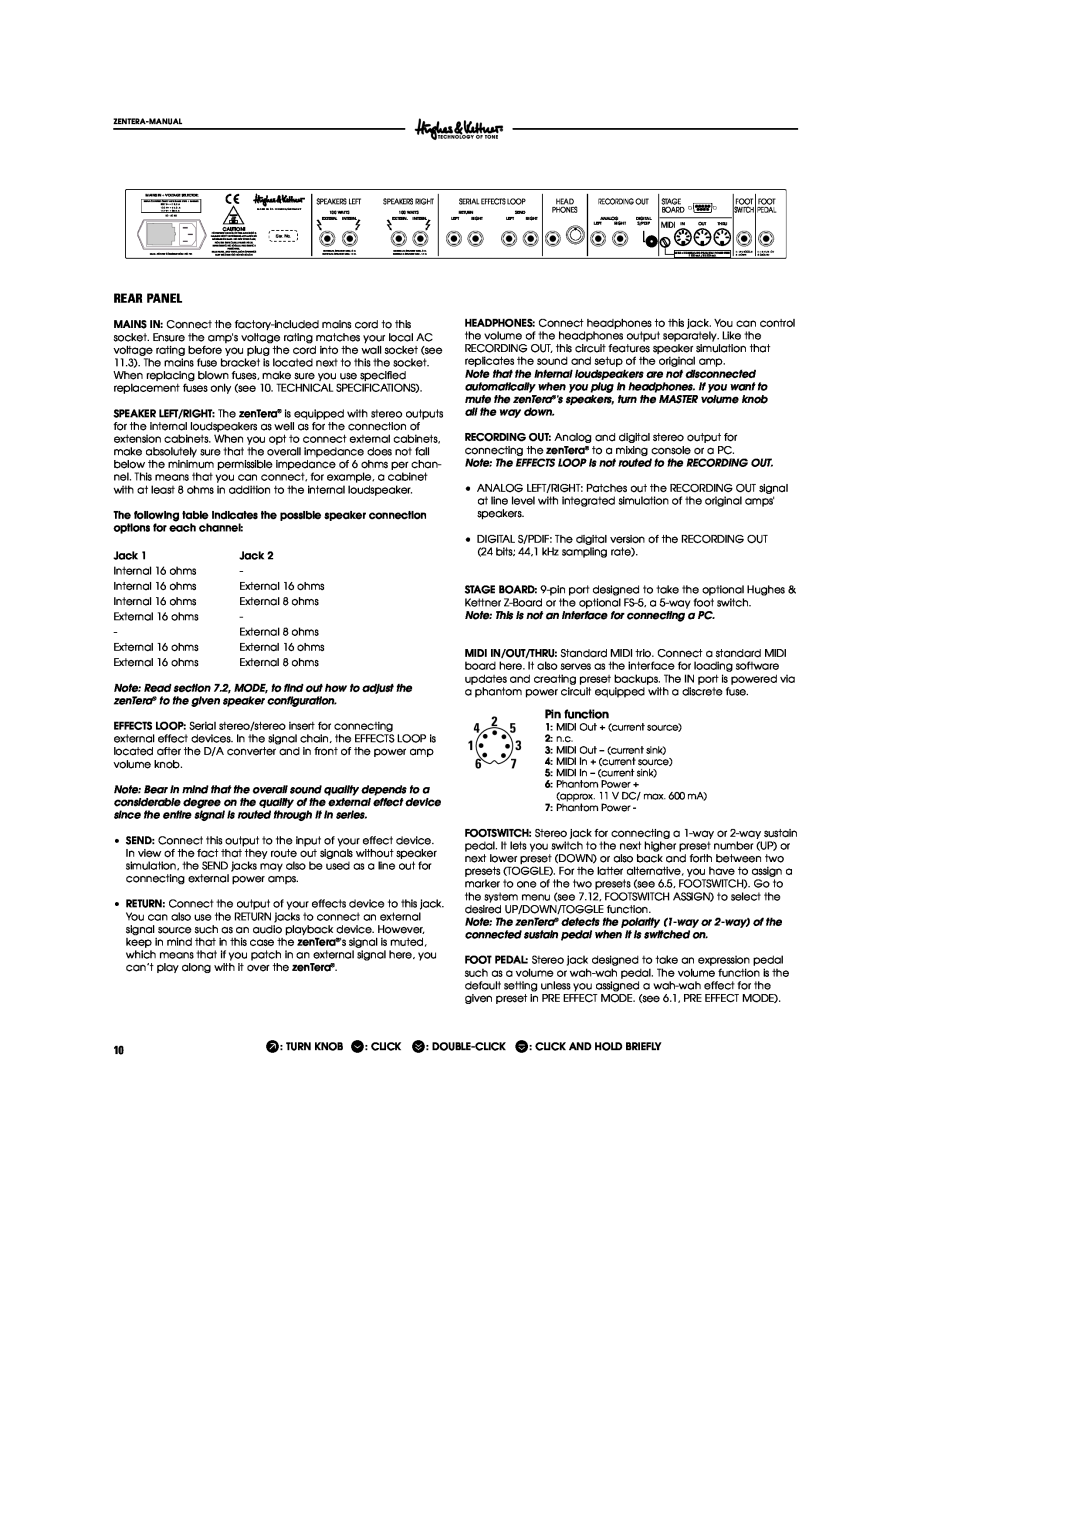 Hughes & Kettner DSM manual Rear Panel, Pin function 